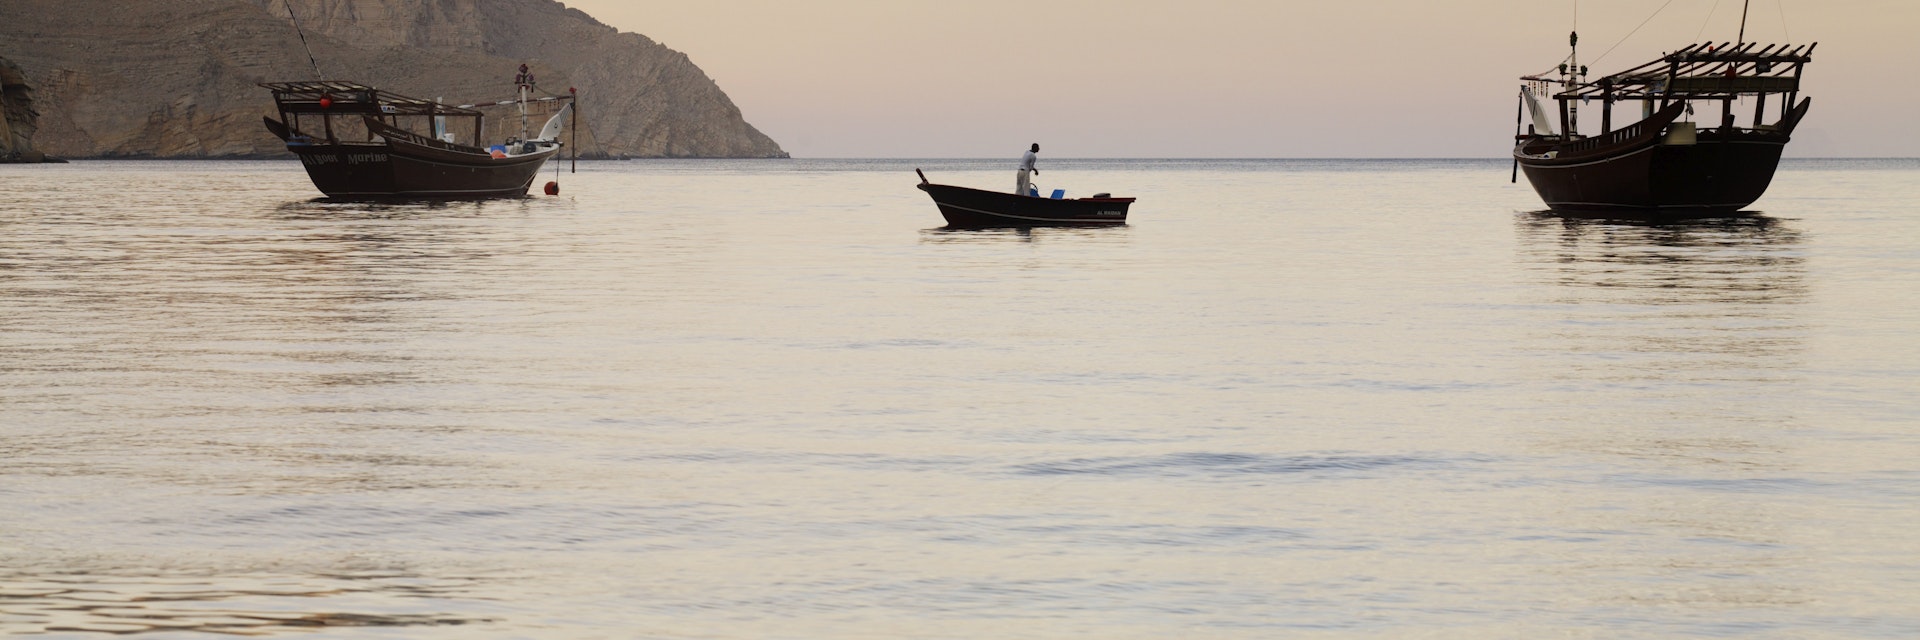 Fishing boats in water at dawn near Kumzar Village.